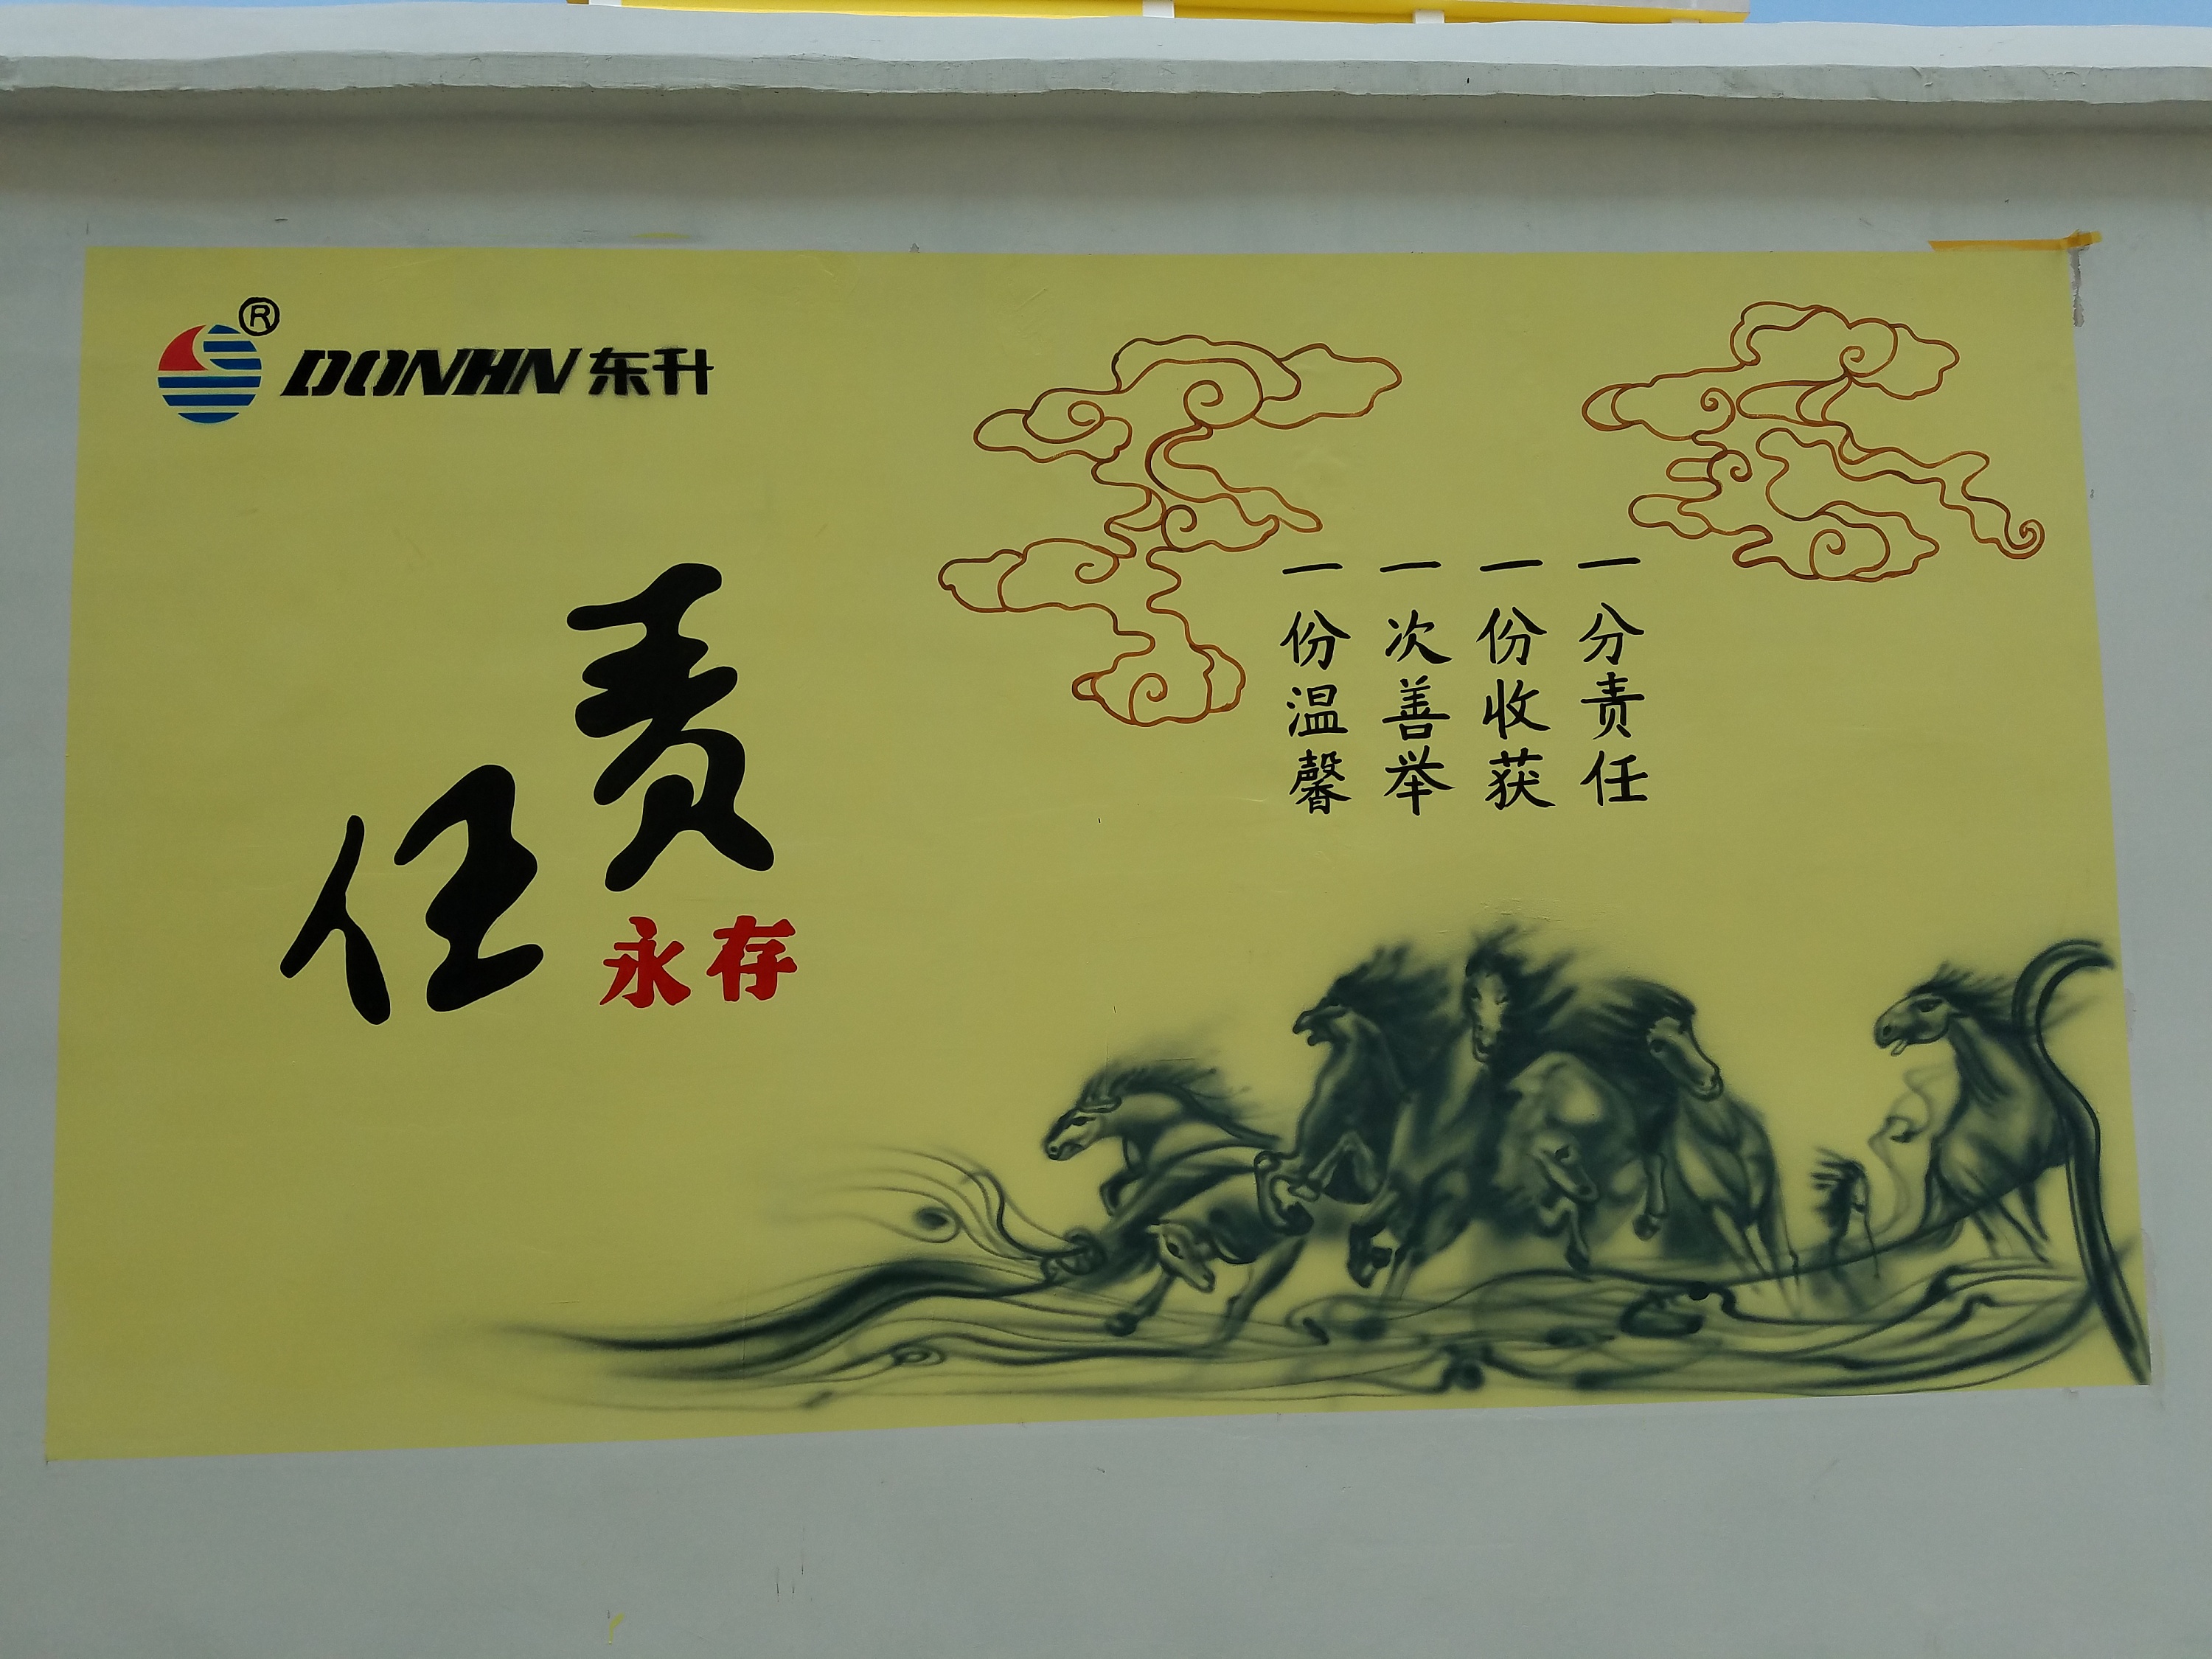 滁州企业文化墙 滁州文化墙彩绘 天长彩绘 滁州校园文化墙彩绘 六安